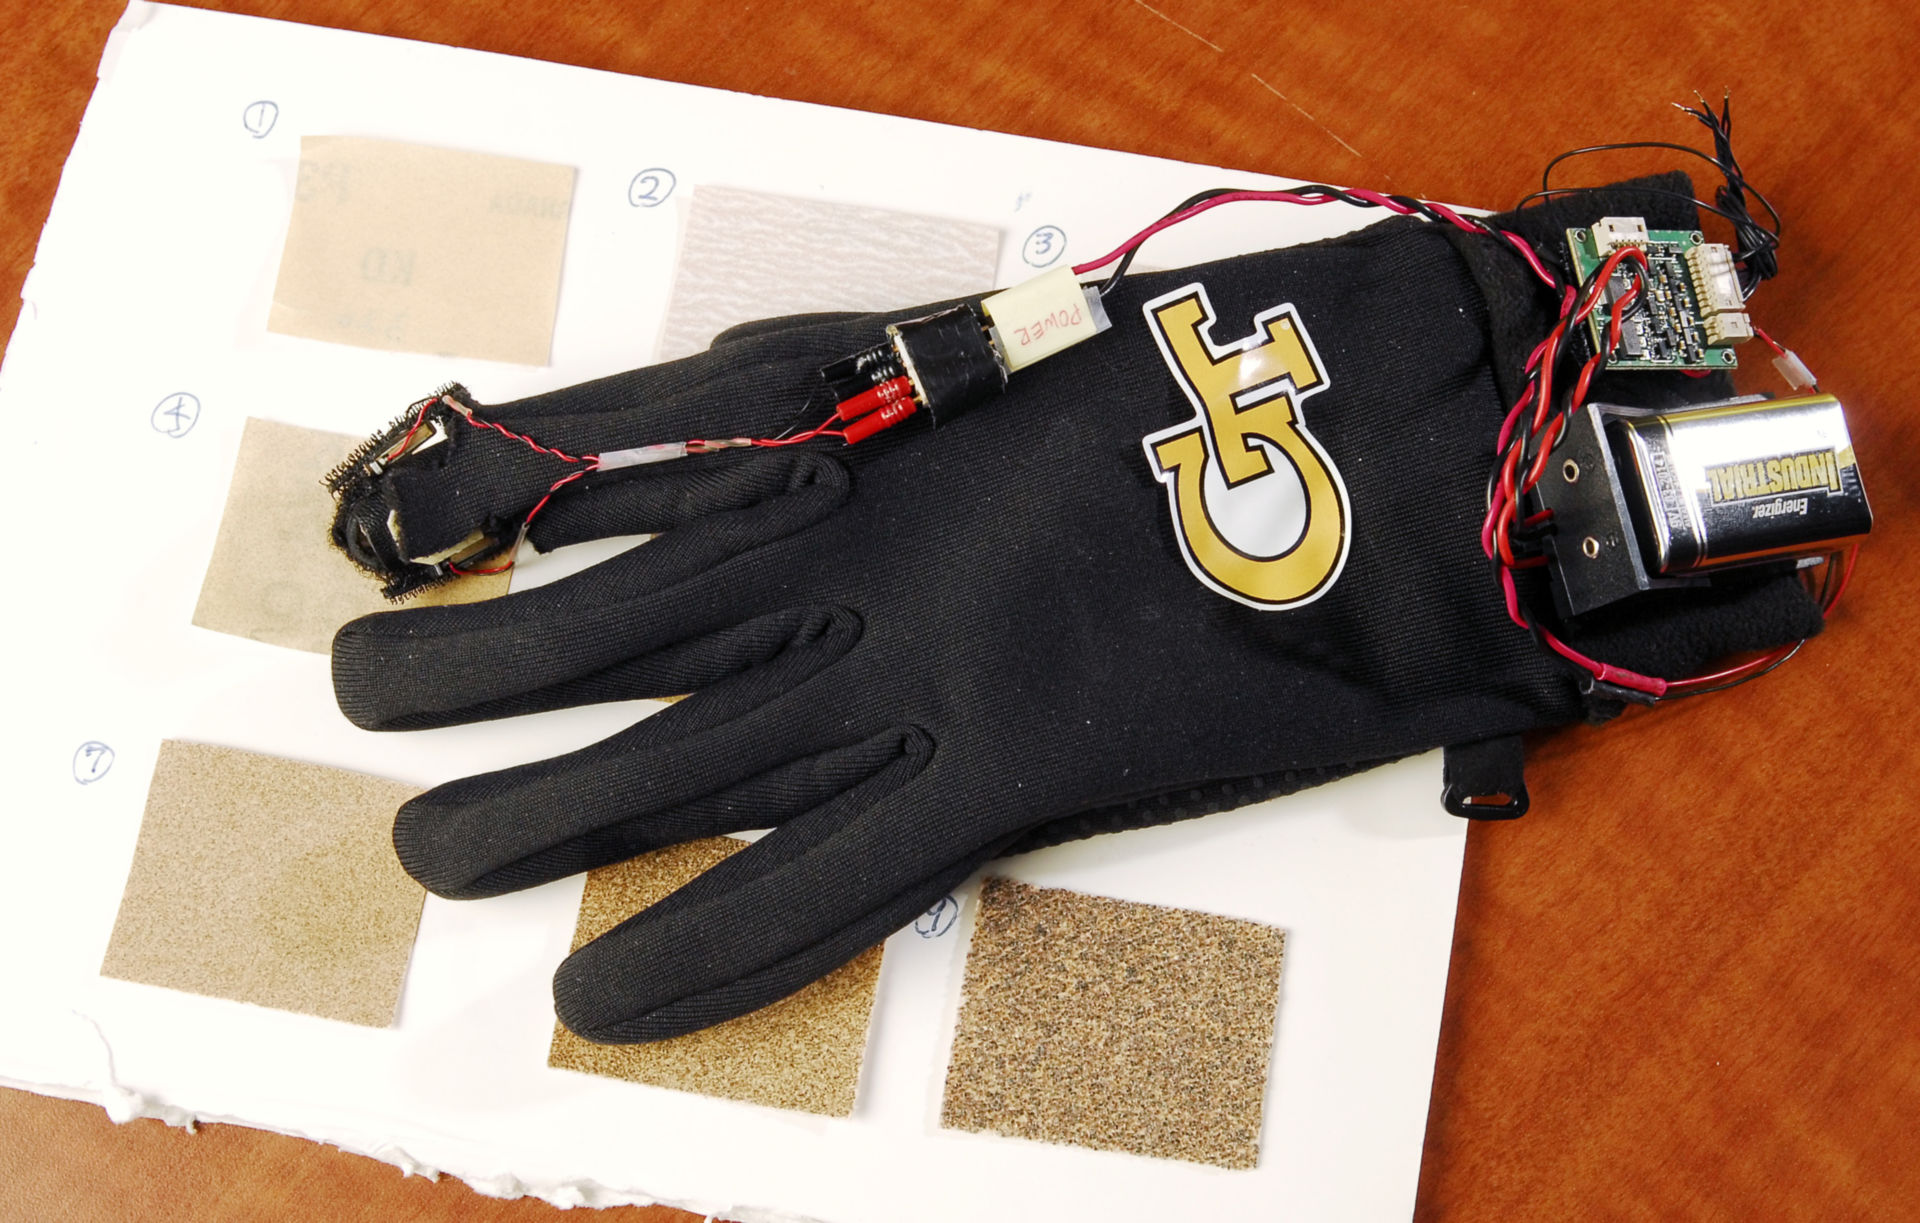 Sensory glove